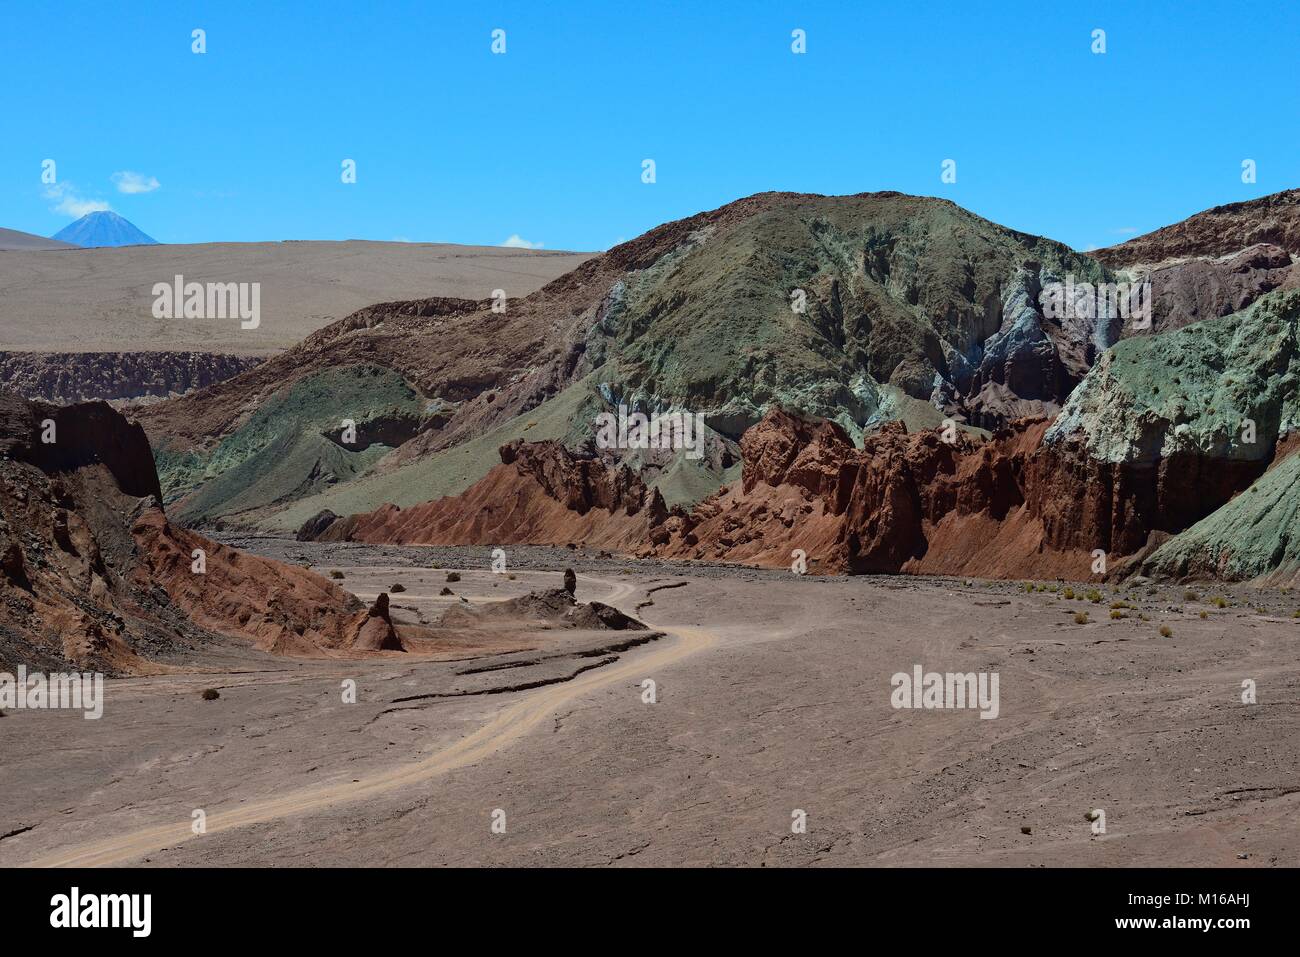 Desert landscape with dirt road in the Rainbow Valley, Valle Arcoiris, near San Pedro de Atacama, Región de Antofagasta, Chile Stock Photo